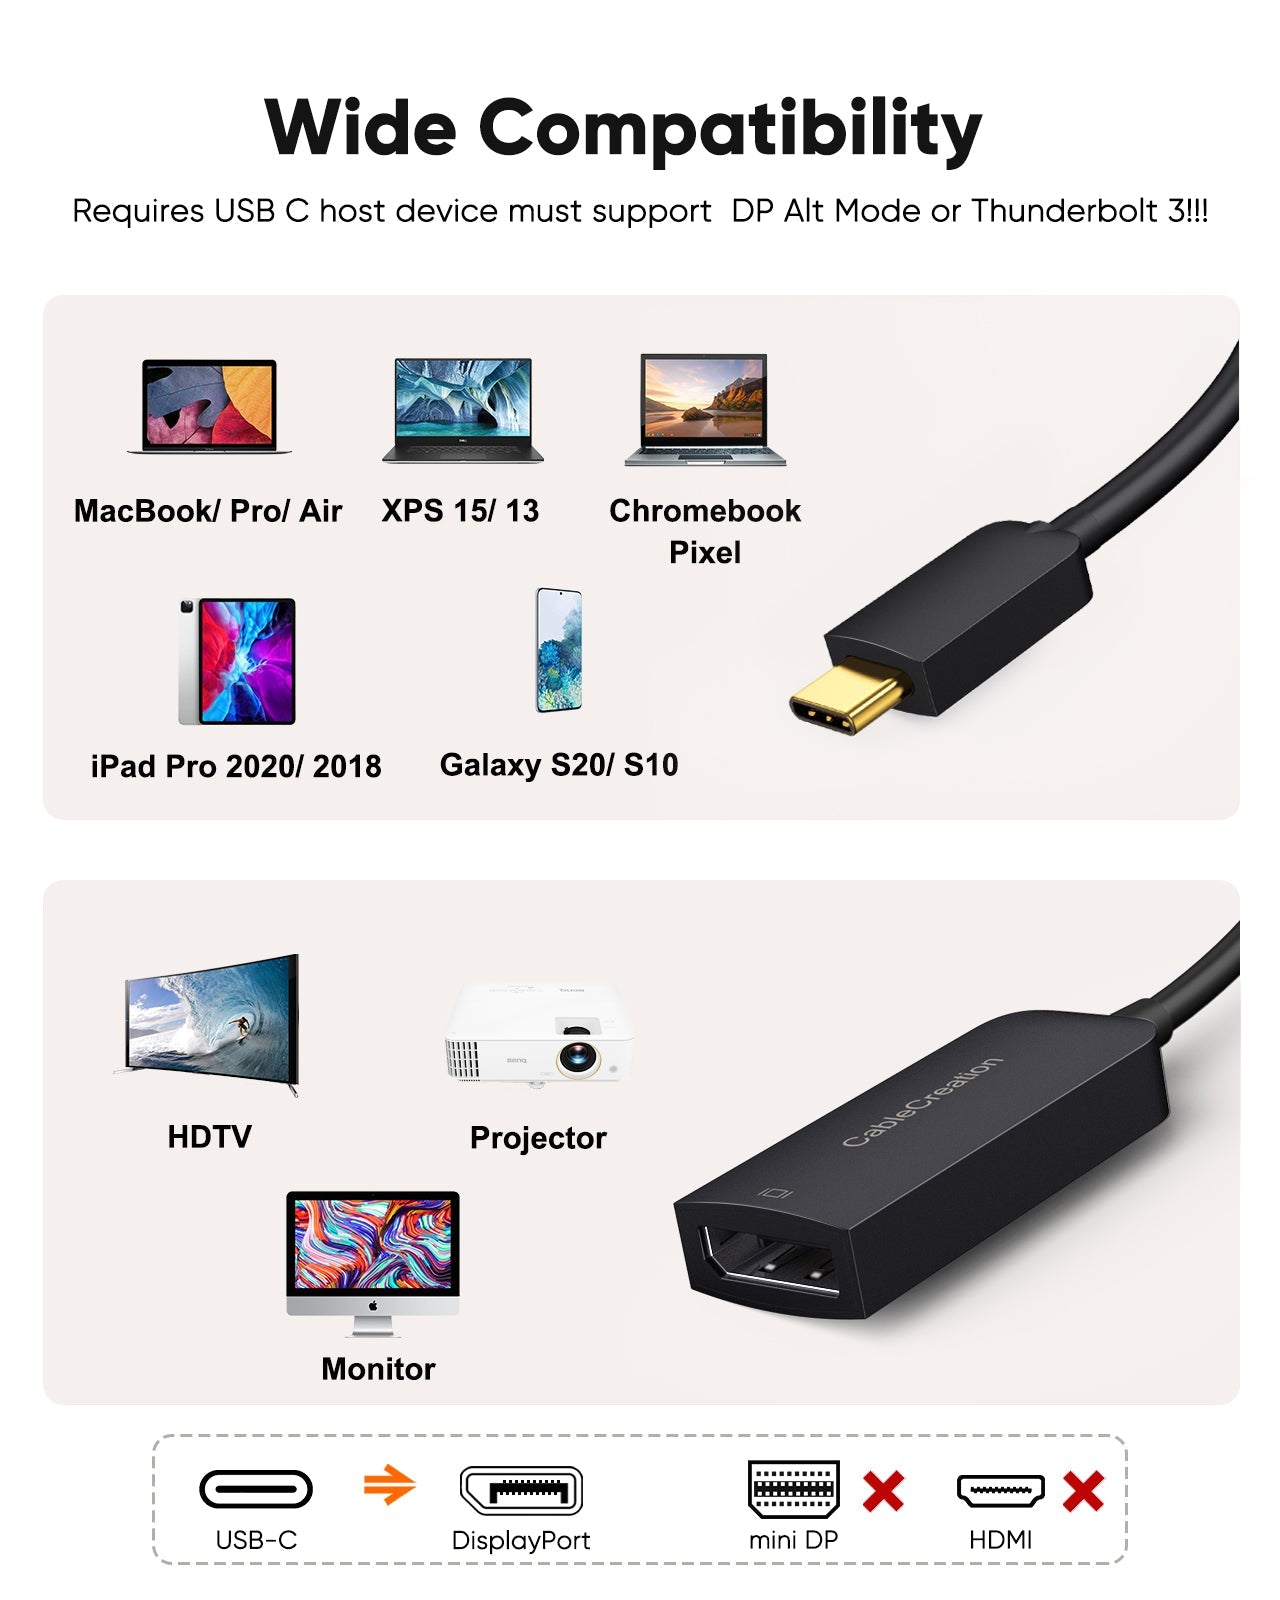 8k Displayport Cable, Displayport Macbook, Display Port Cable